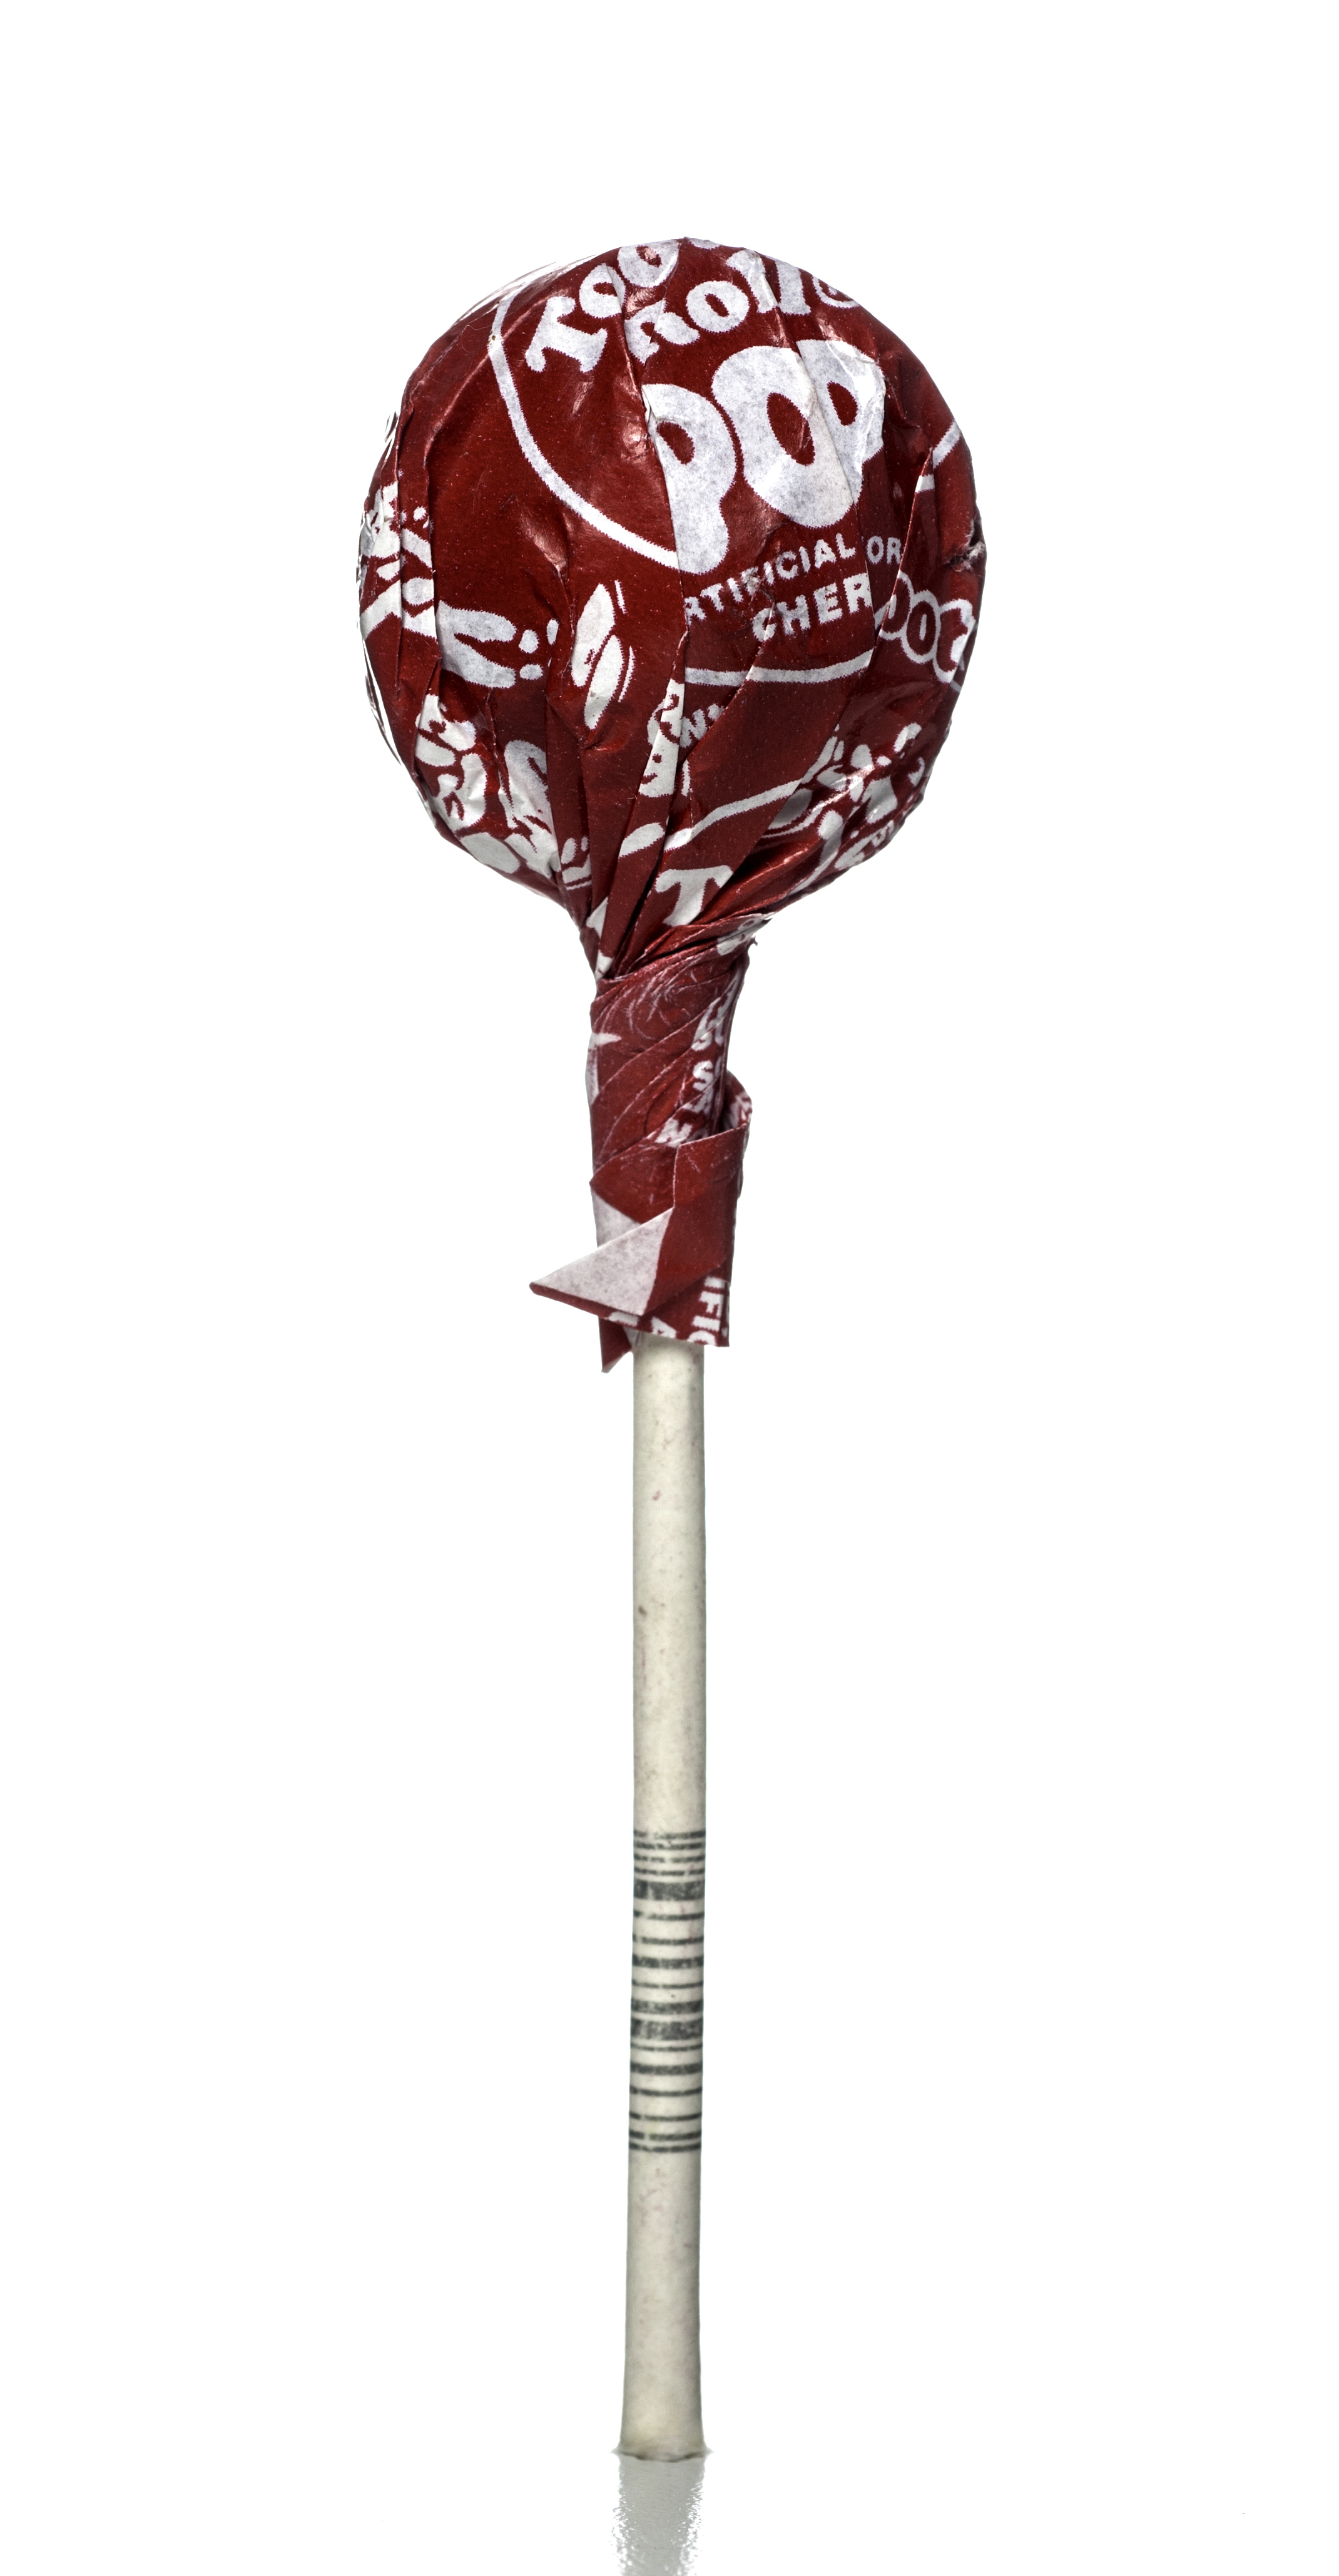 A Tootsie Pop lollipop